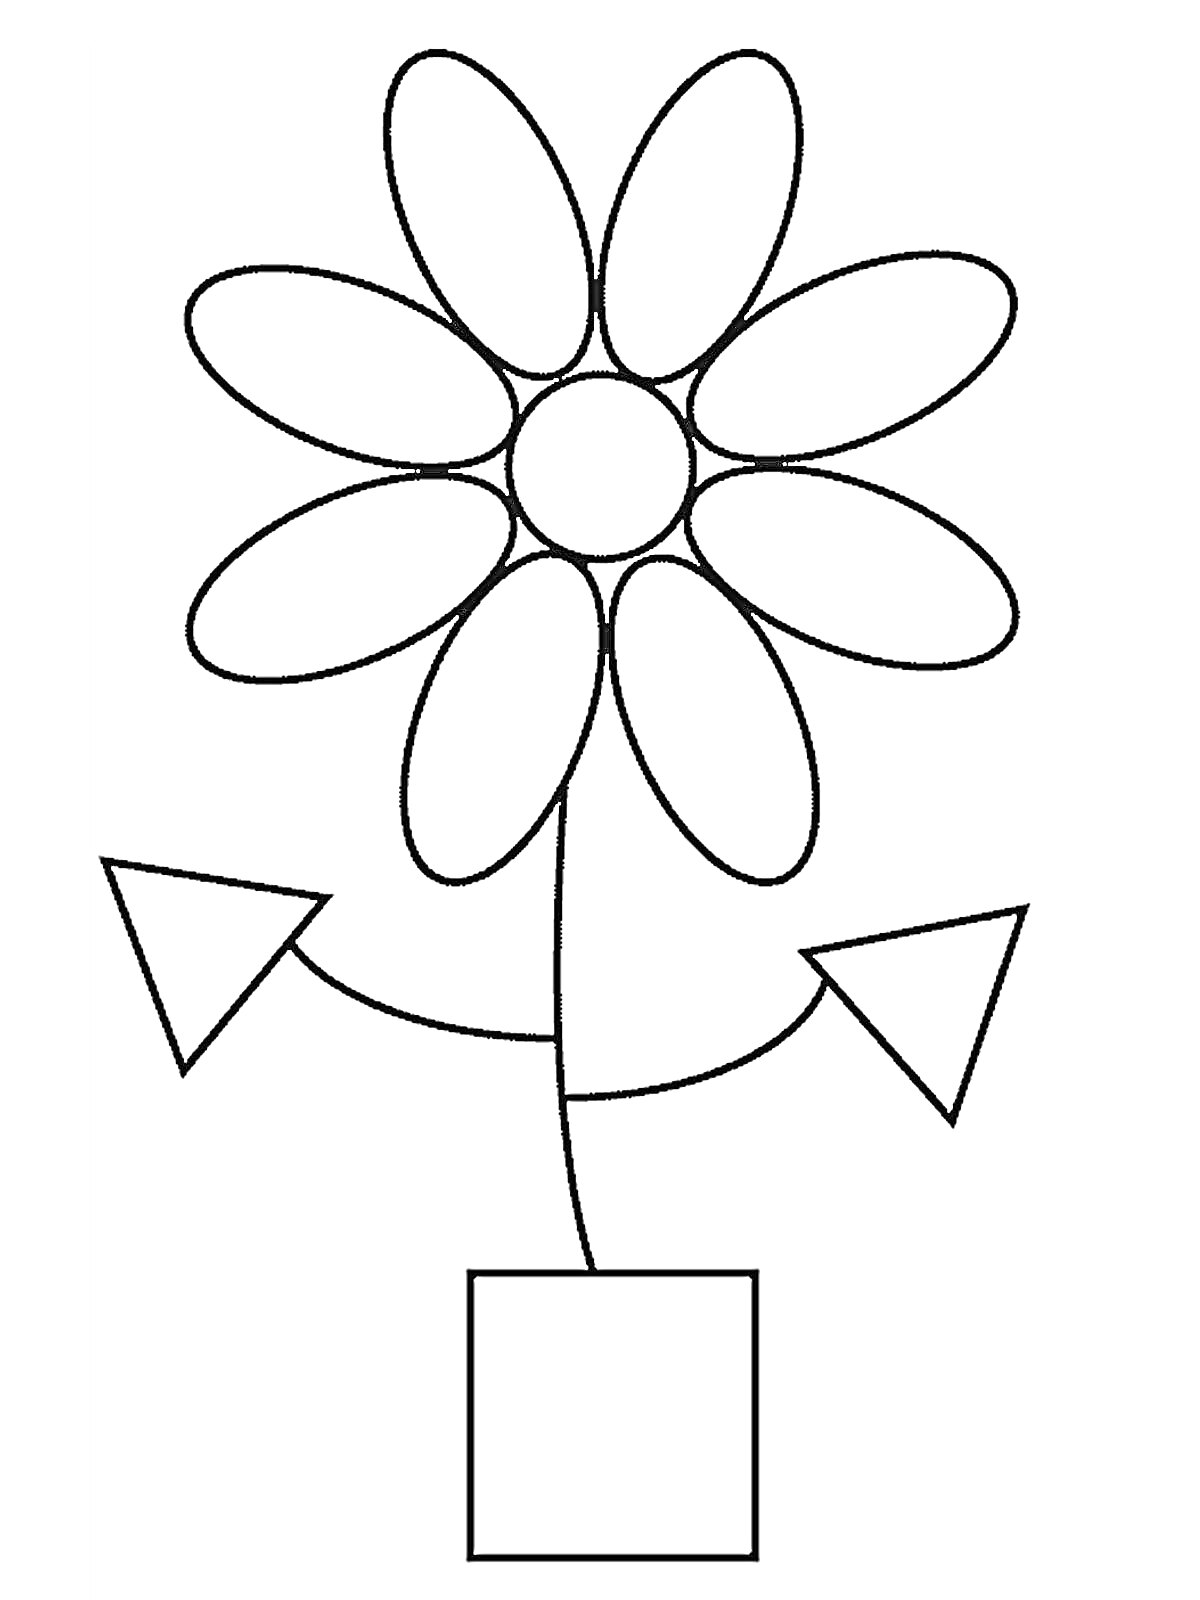 Раскраска Цветок с круглыми лепестками, квадратным горшком и треугольными листьями